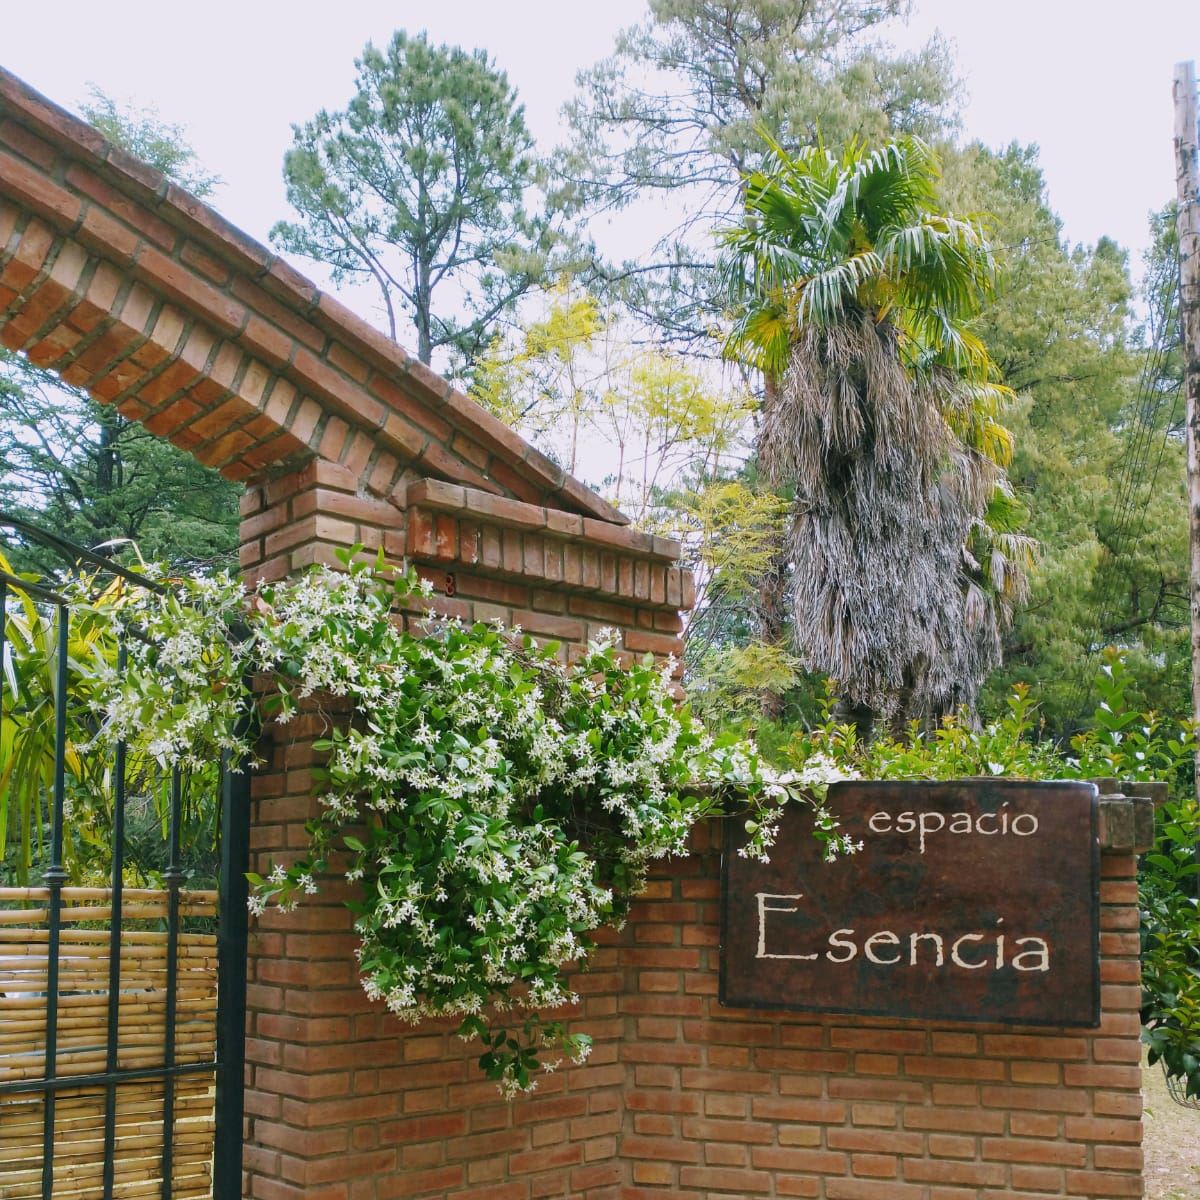 Entrada | Espacio Esencia - Villa de Las Rosas - Traslasierra